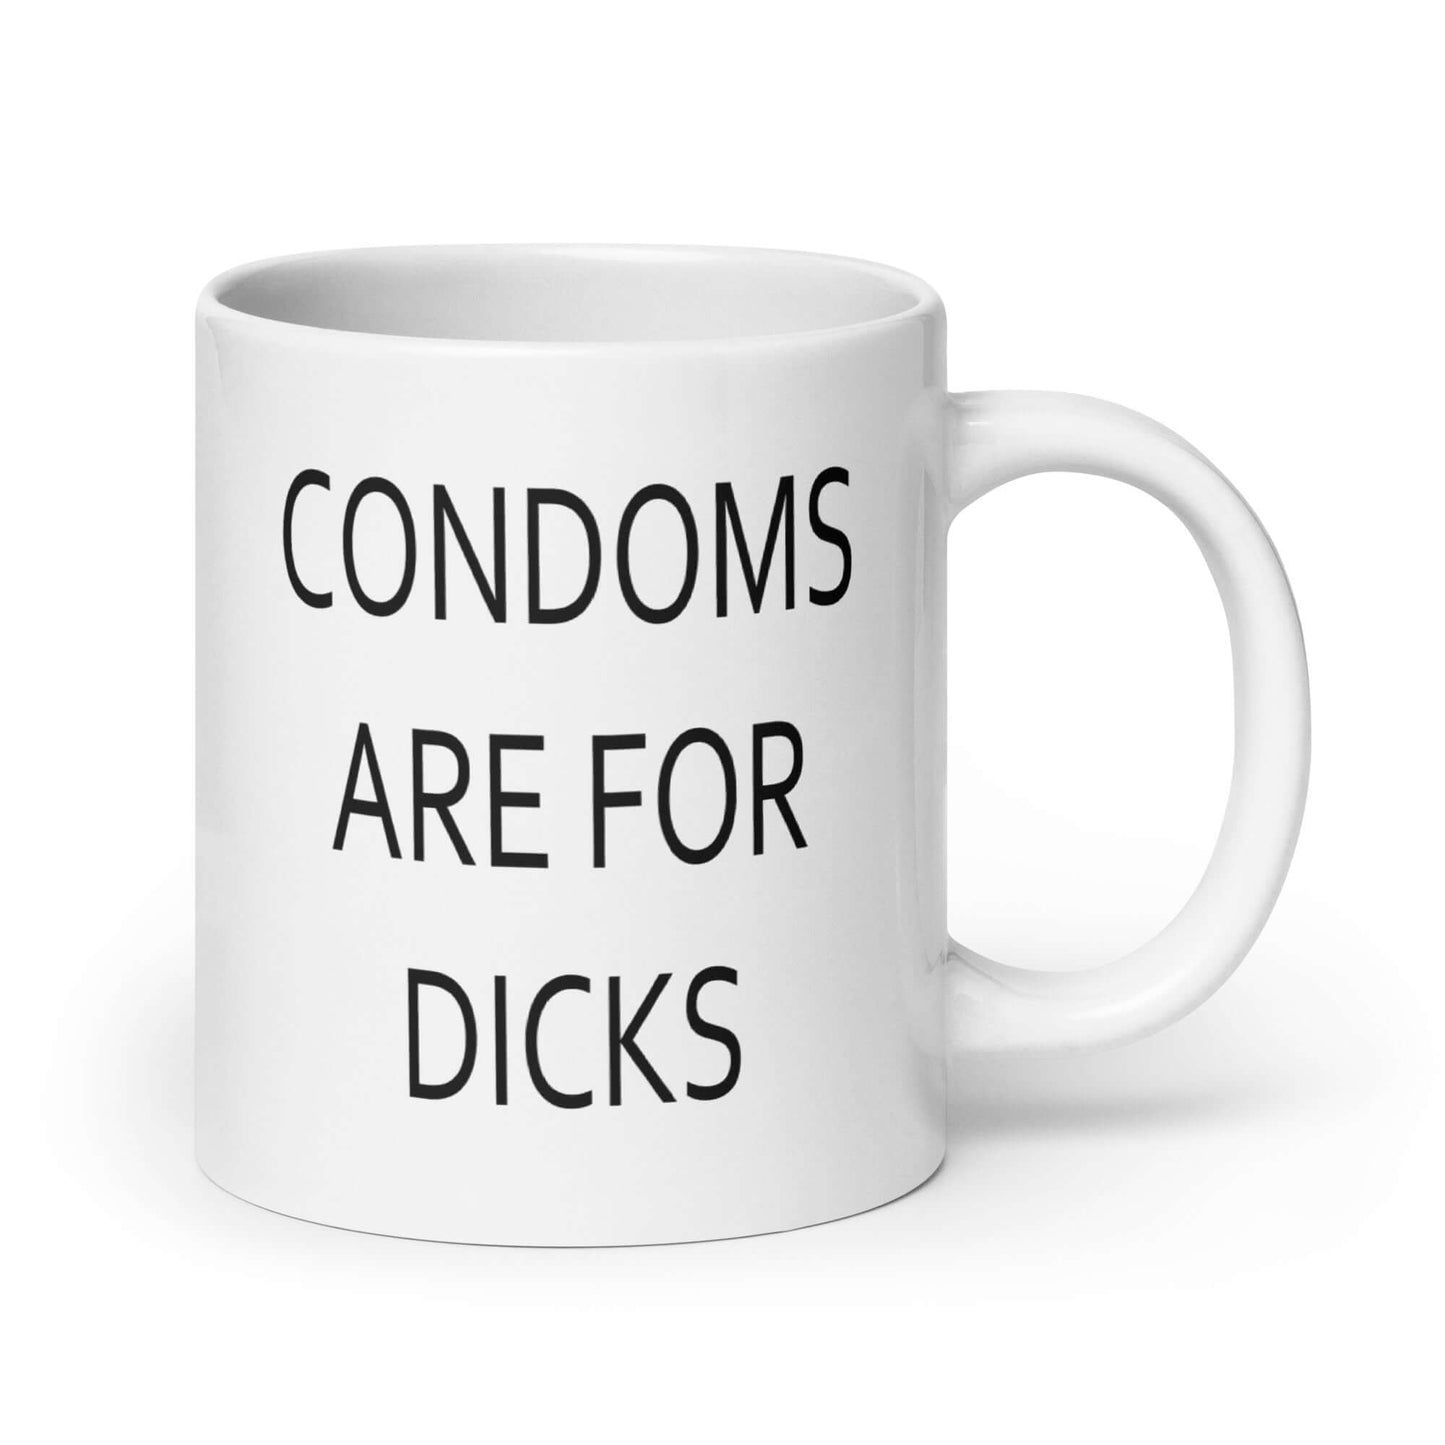 Funny condoms are for dicks Mug